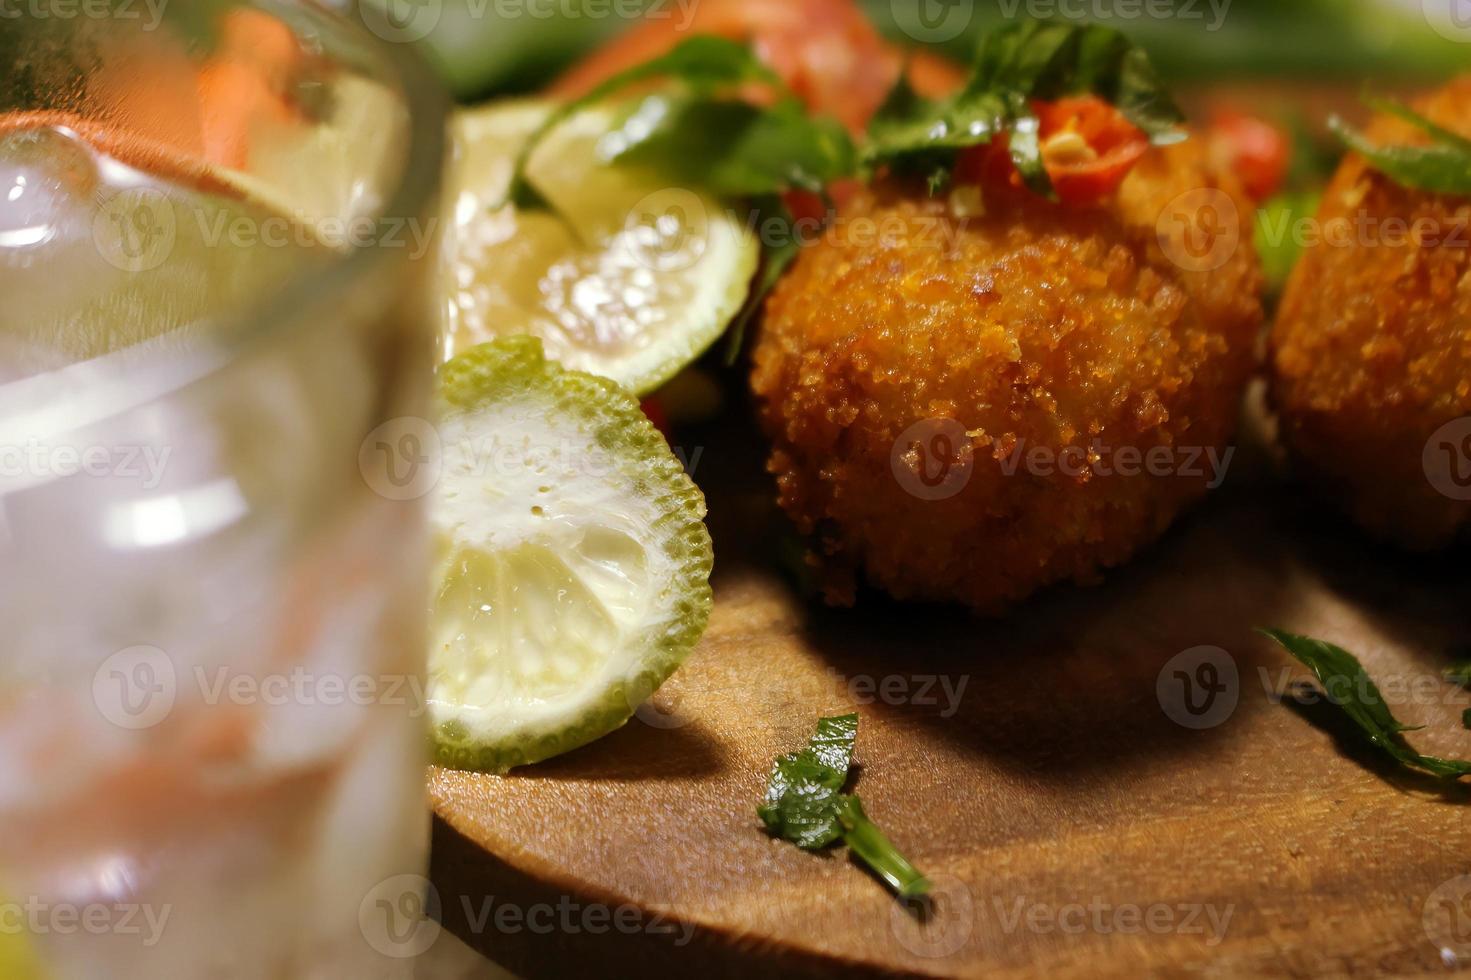 Foto von goldbraunen Kartoffelküchlein, außen knusprig und innen weich, Iftar-Essen, mit frischen Getränken